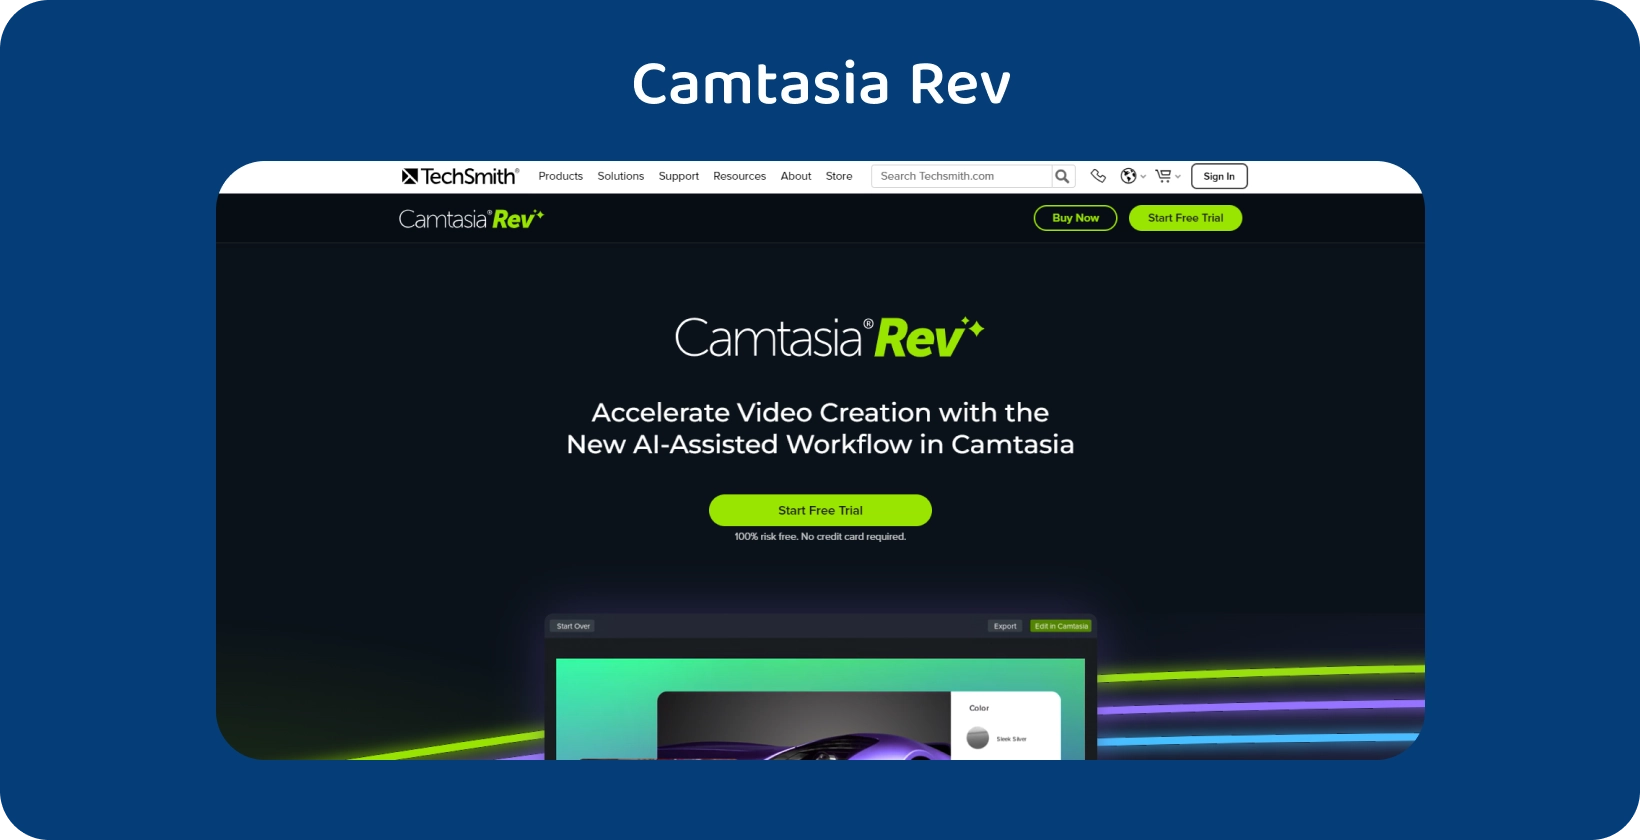 Интерфейс временной шкалы редактирования видео Camtasia, выделяющий функции транскрипции и редактирования.